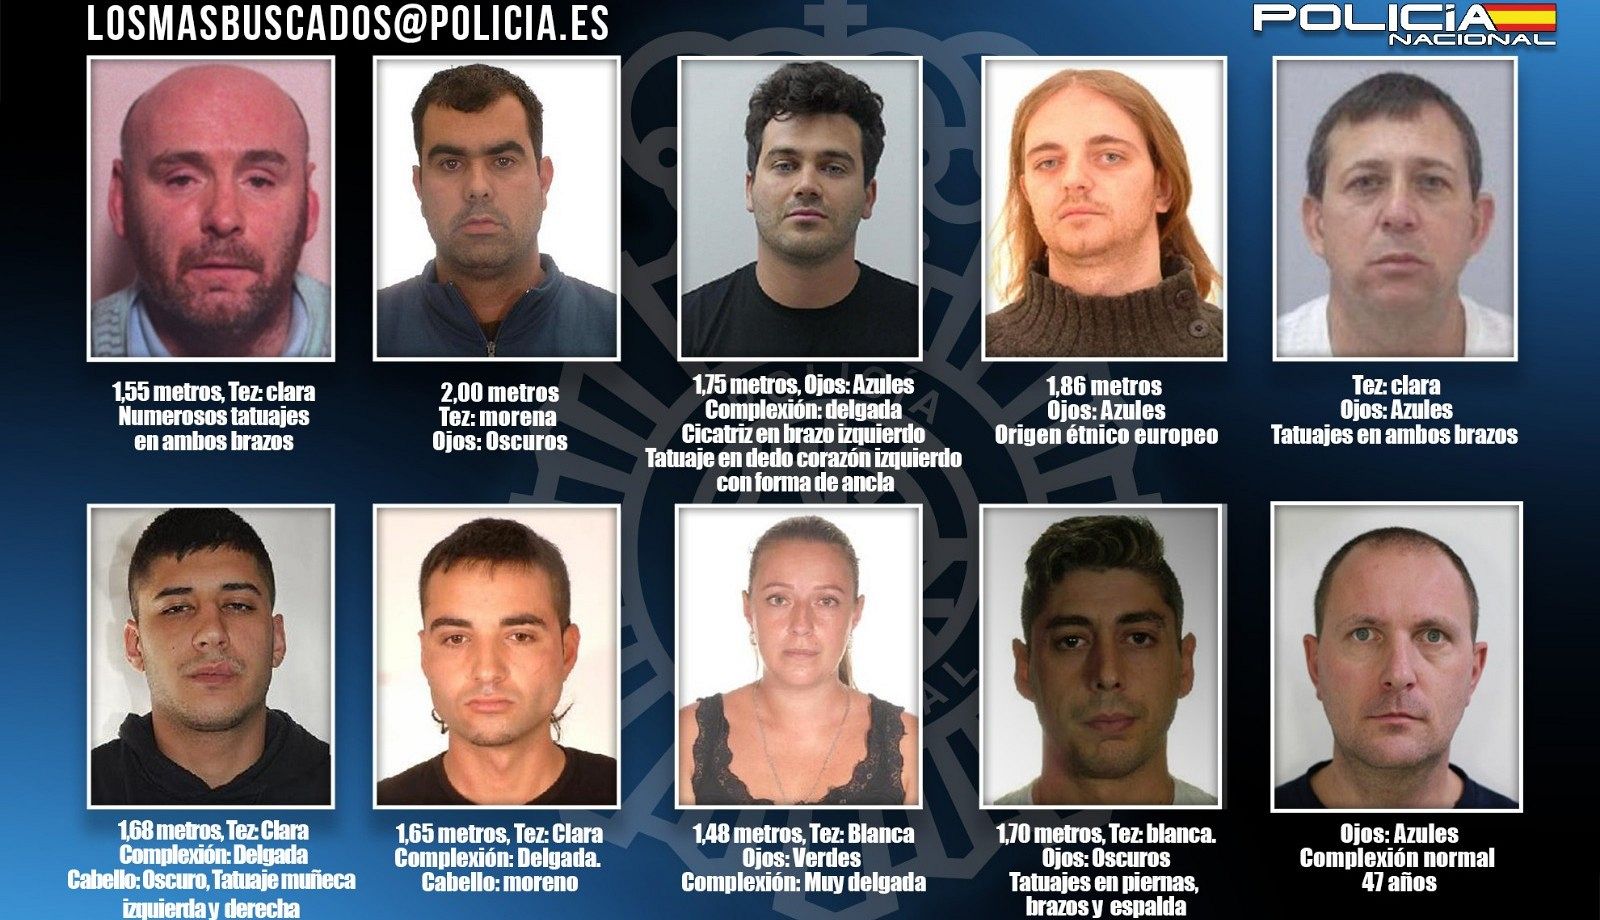 Fotografías de los diez fugitivos incluidos en la campaña de los más buscados por la Policía Nacional.paña de la Policía Nacional